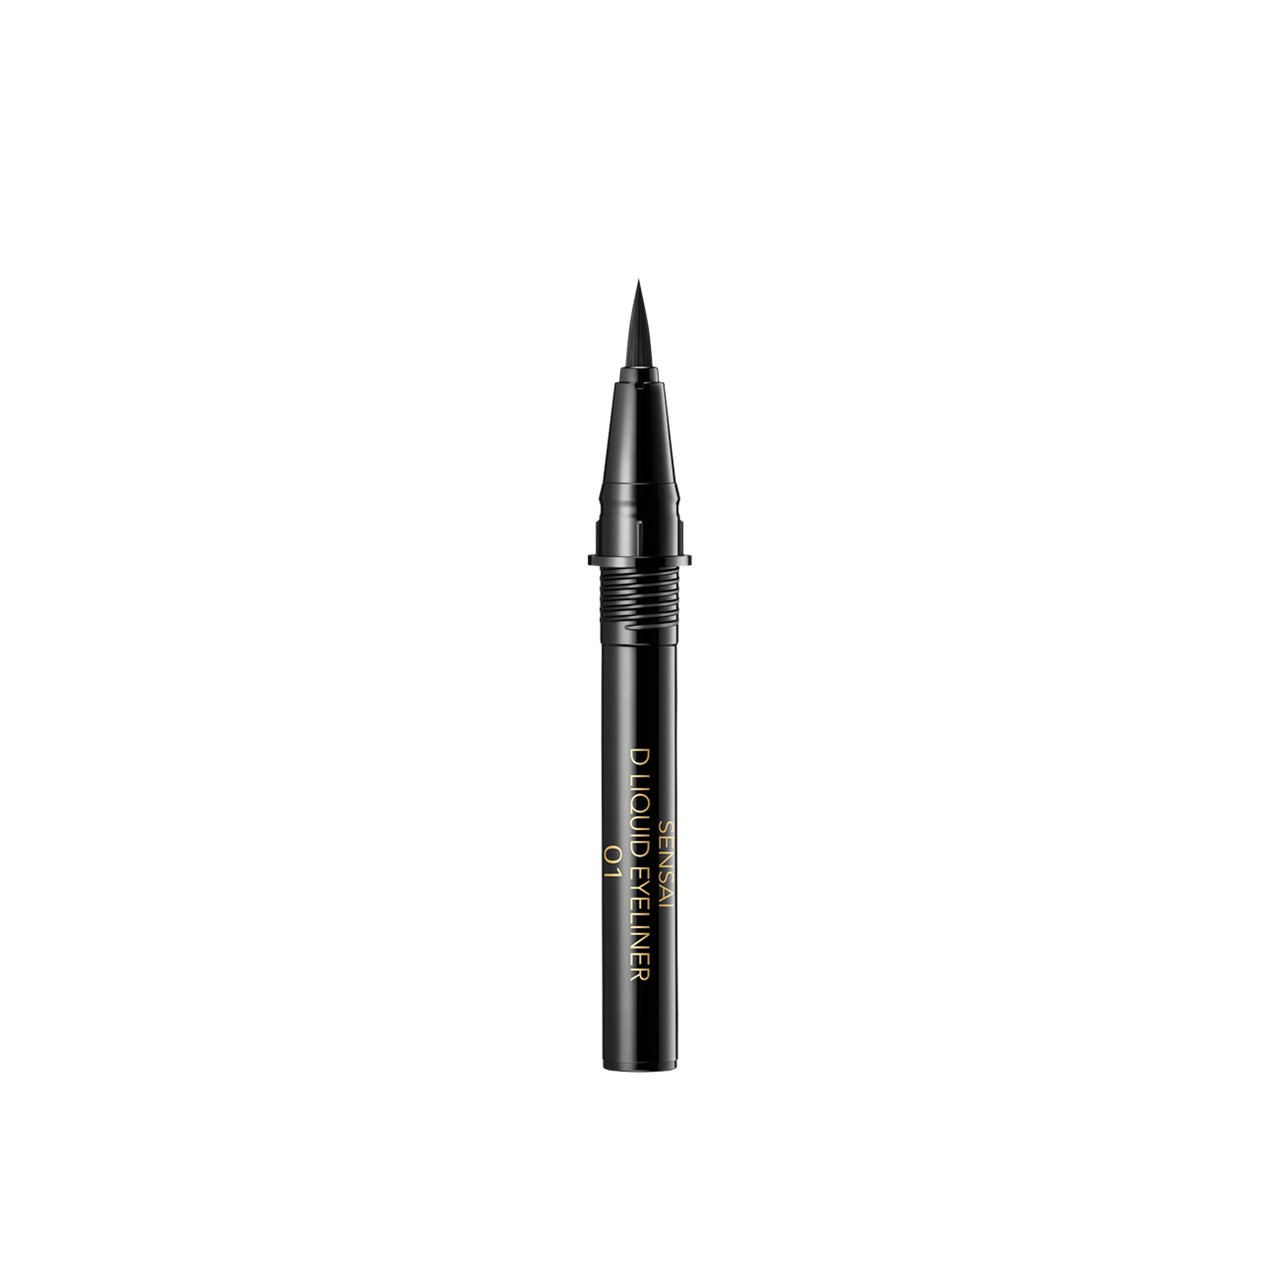 SENSAI Designing Liquid Eyeliner Refill 01 Black 0.6ml (0.02 fl oz)